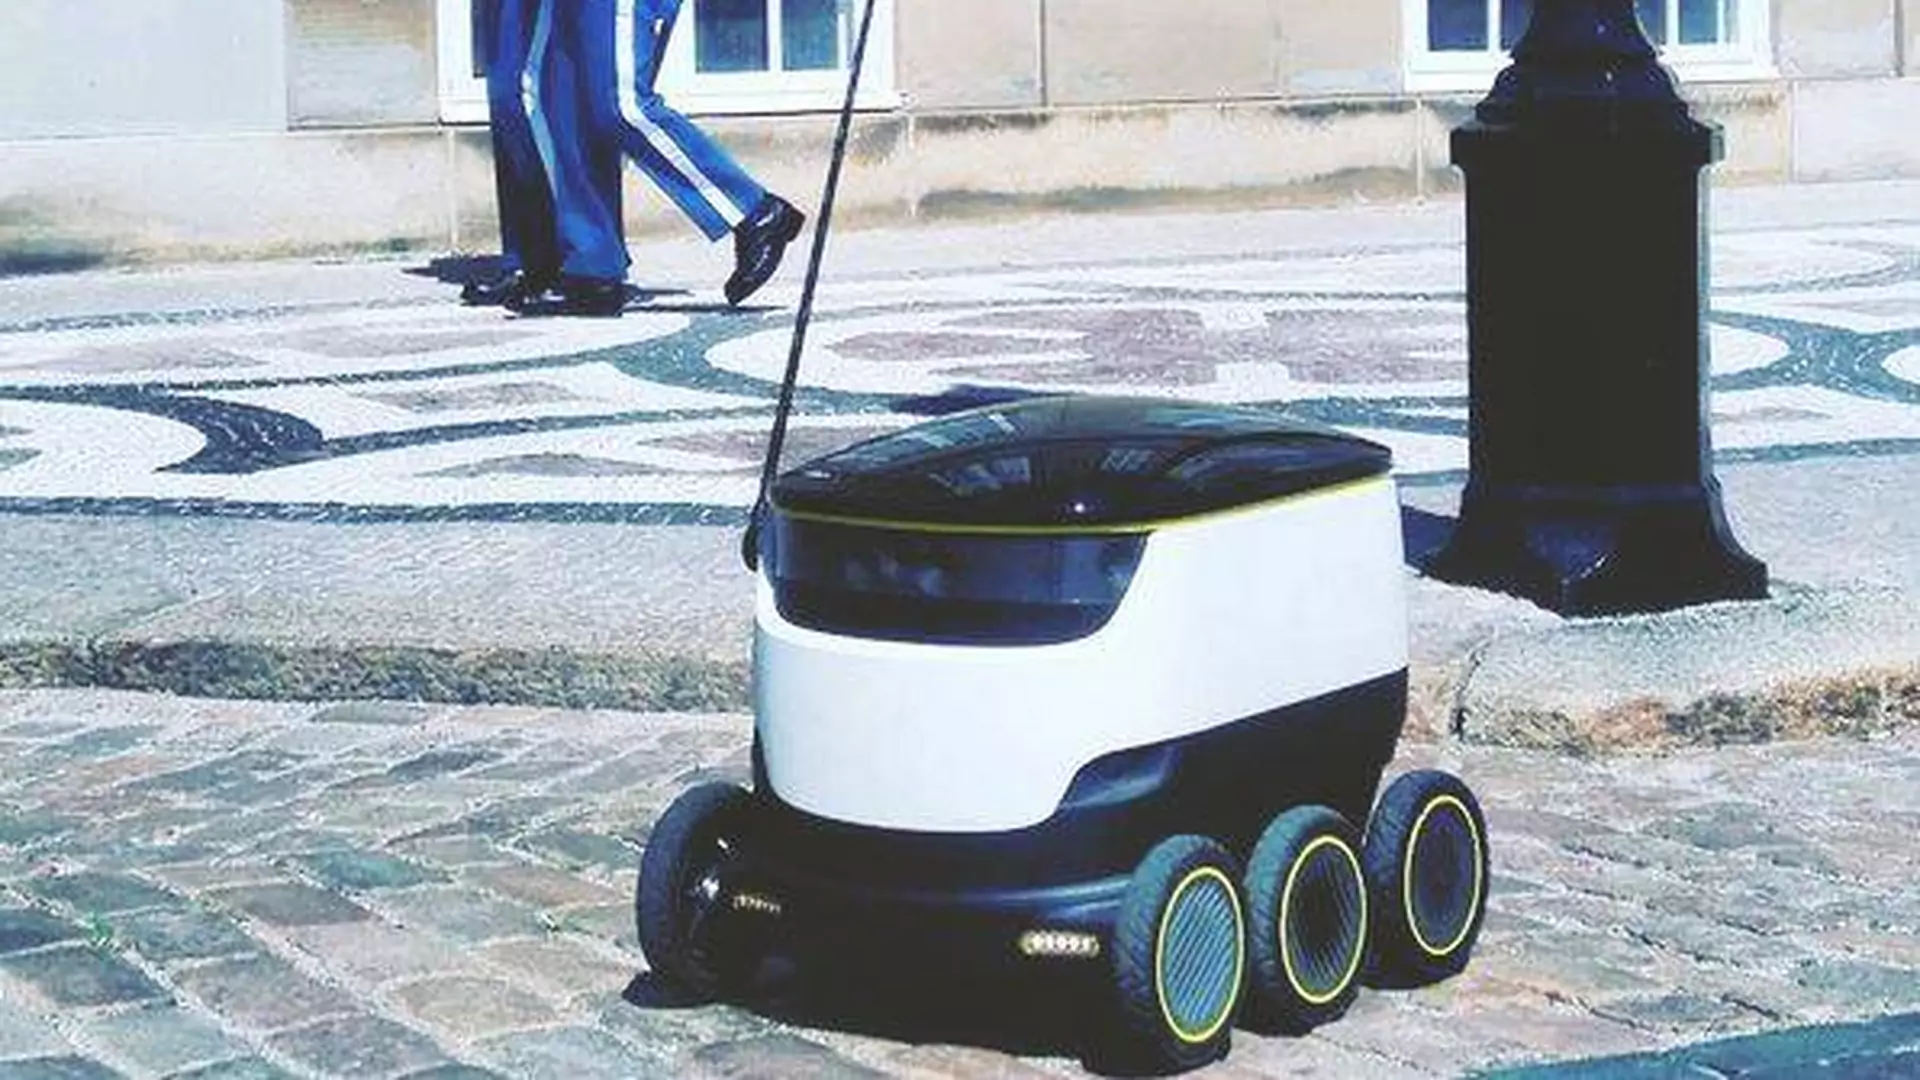 Już wkrótce na ulicach pojawią się roboty dostarczające jedzenie?